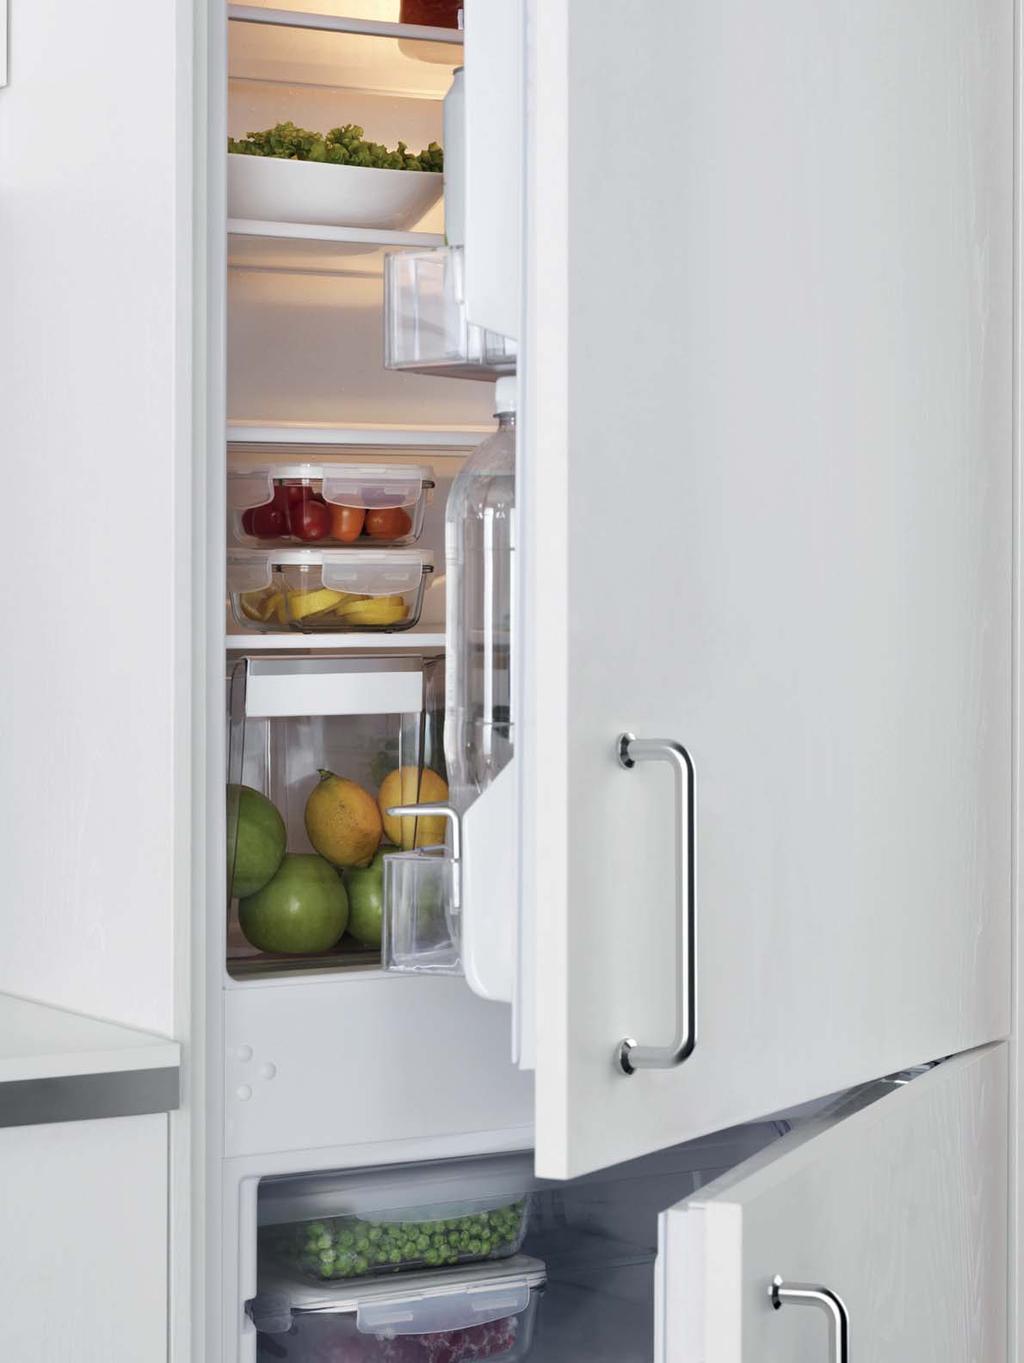 FRIGORÍFICOS E CONGELADORES Os frigorí cos e congeladores IKEA estão equipados com funcionalidades e acessórios práticos que ajudam a manter os alimentos frescos durante mais tempo.